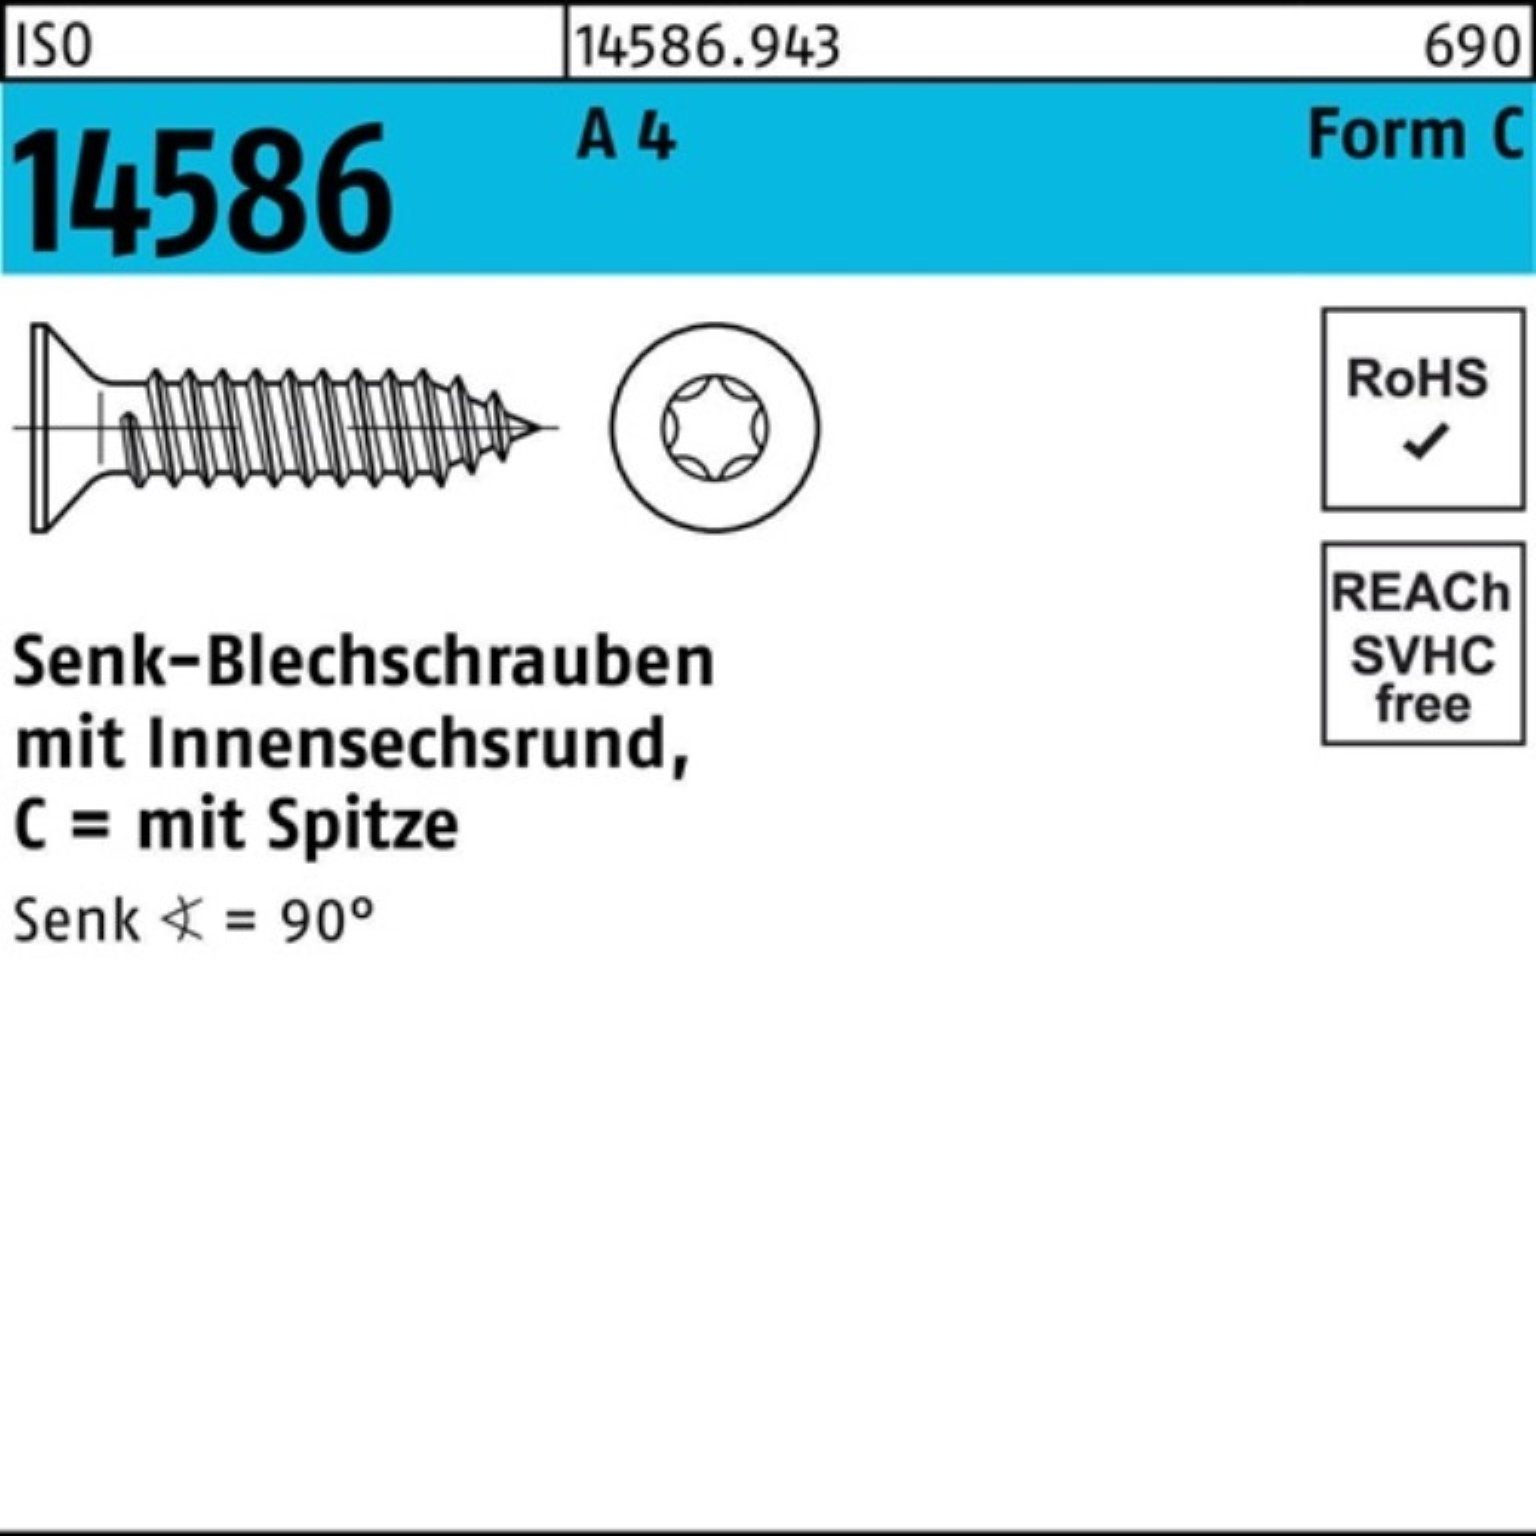 100 1000er 19-T15 Reyher Senkblechschraube Pack ISO 4 ISR/Spitze 3,9x Schraube 14586 A